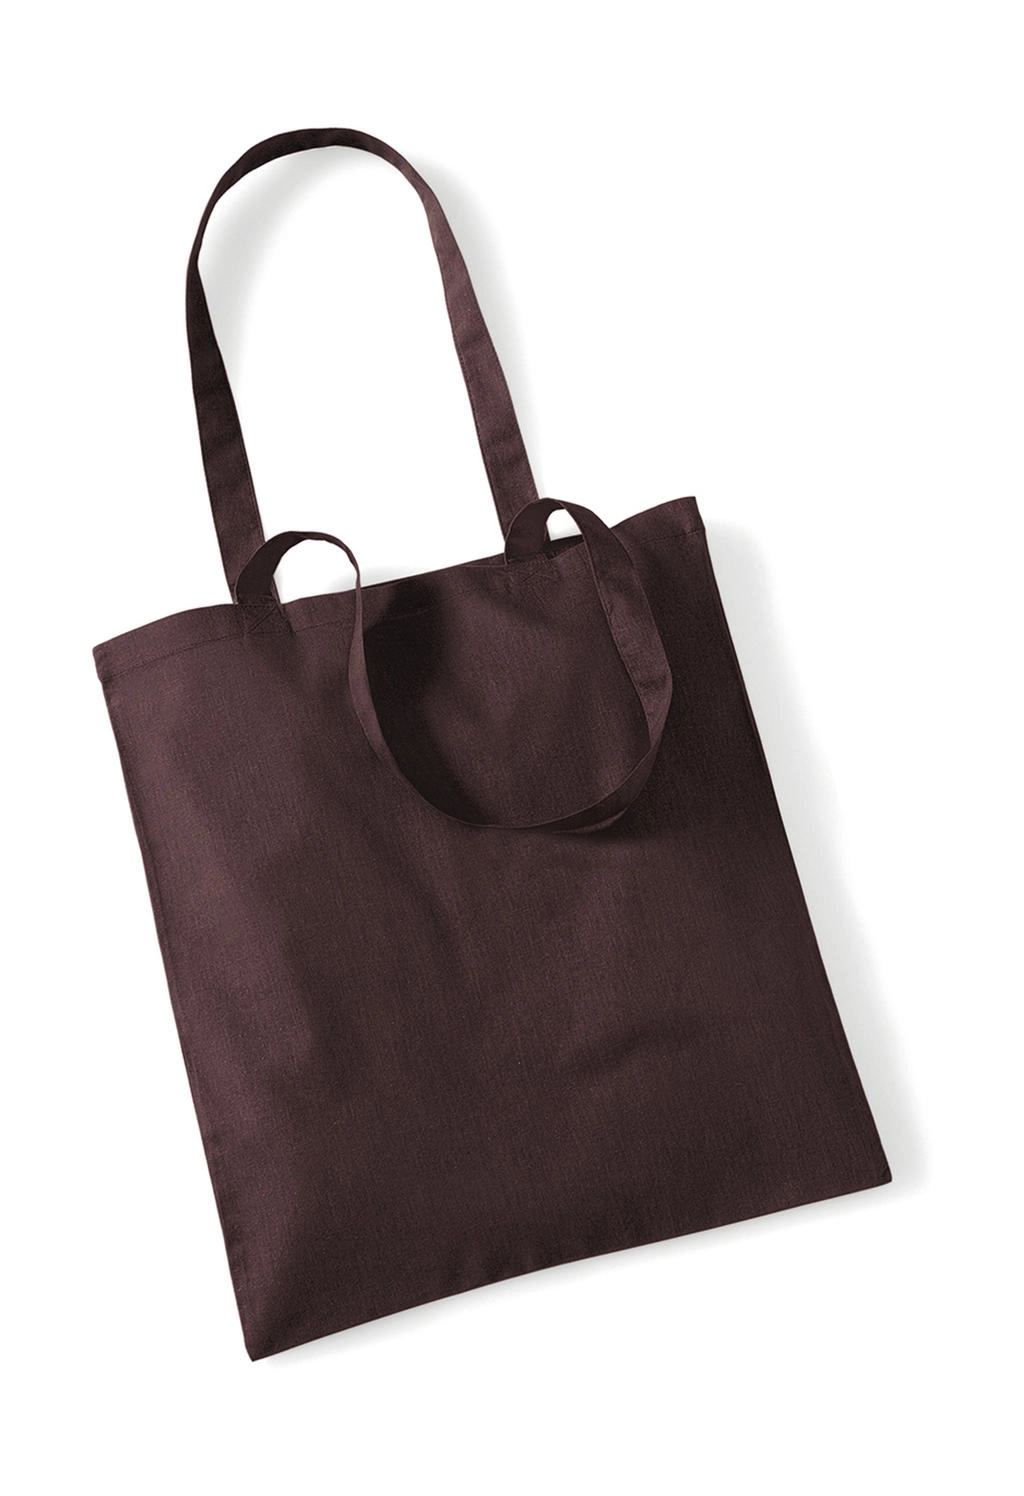 Bag for Life - Long Handles zum Besticken und Bedrucken in der Farbe Chocolate mit Ihren Logo, Schriftzug oder Motiv.